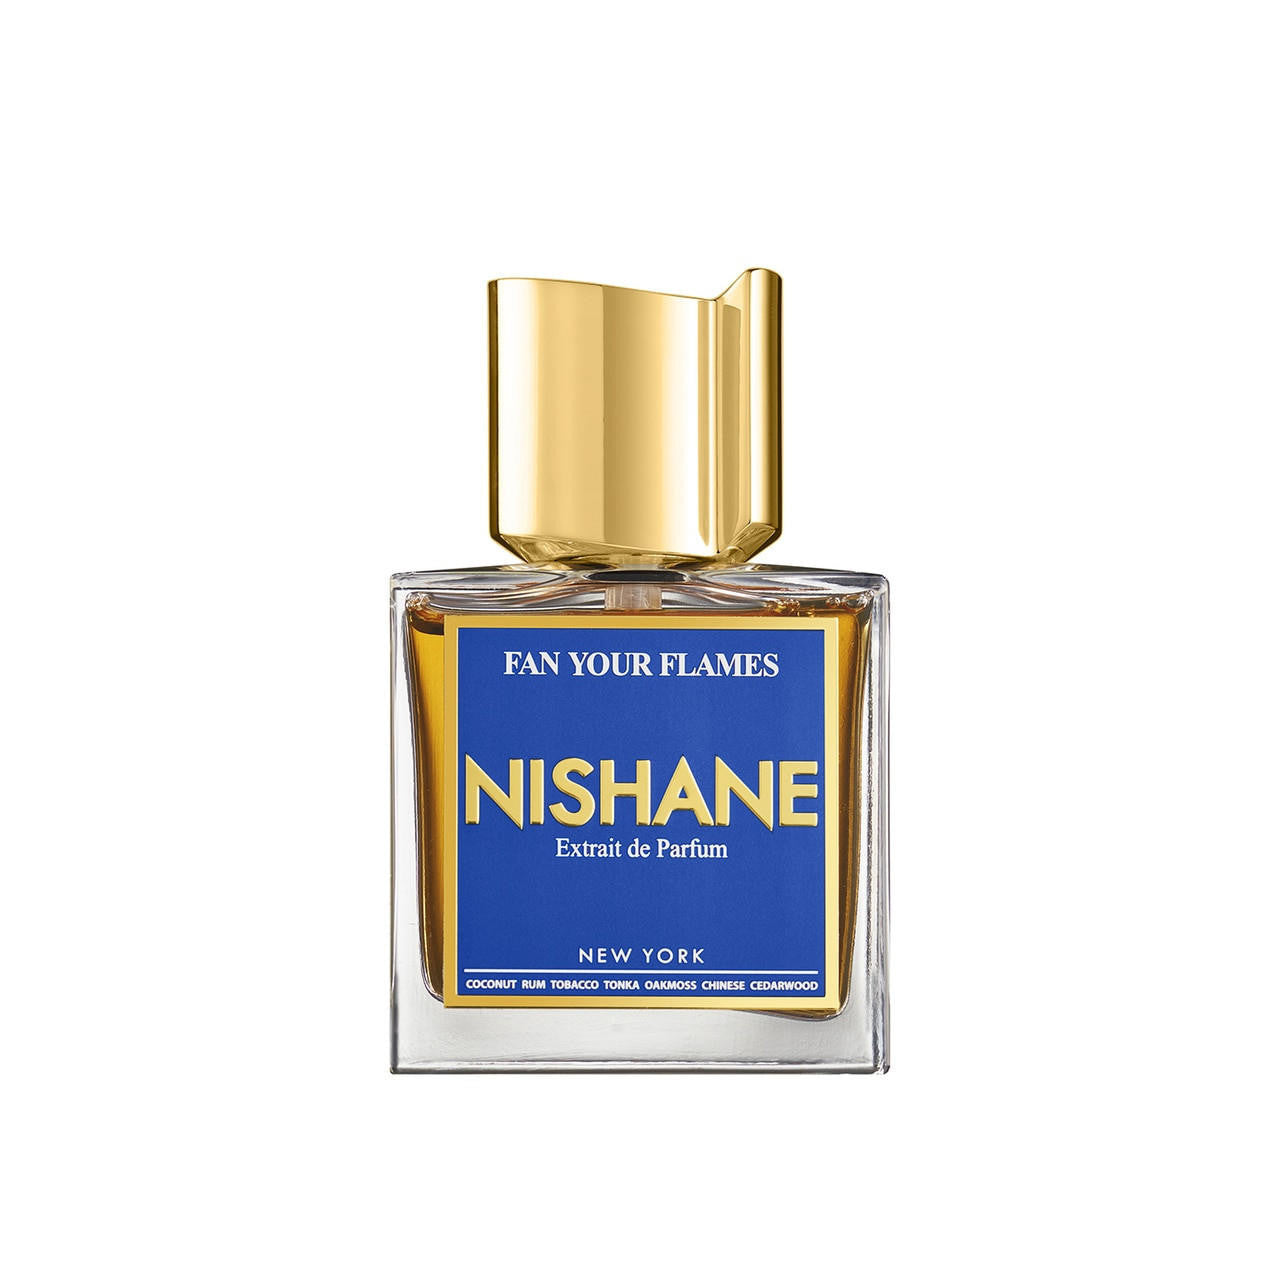  Nishane Fan Your Flames Extrait de Parfum 